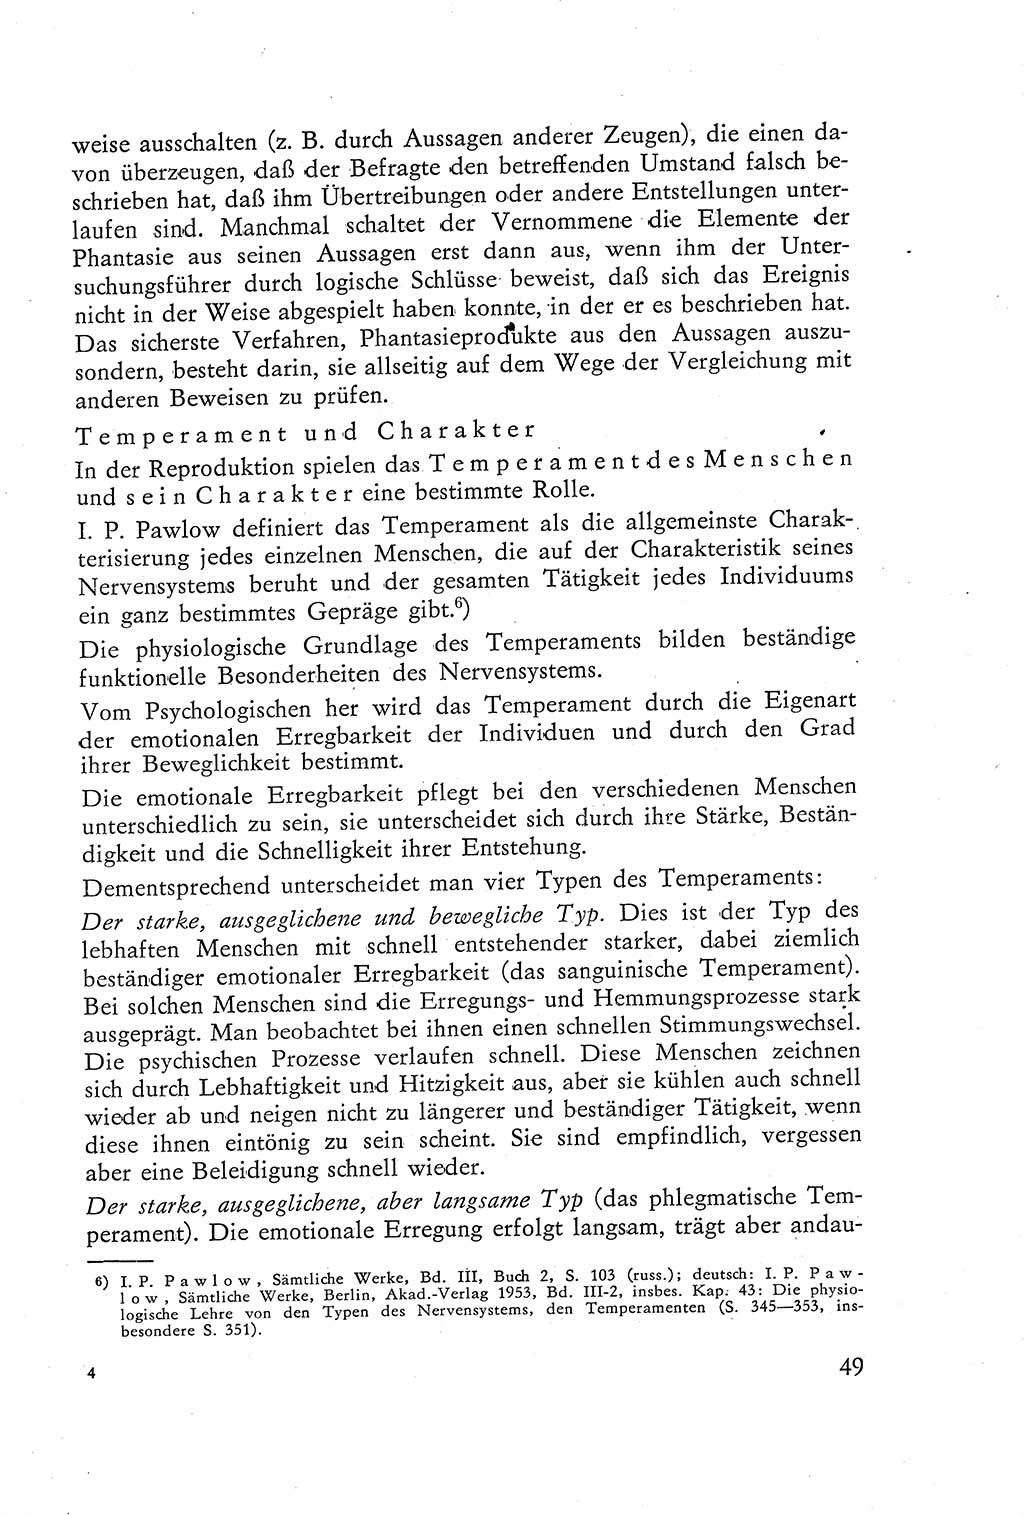 Die Vernehmung [Deutsche Demokratische Republik (DDR)] 1960, Seite 49 (Vern. DDR 1960, S. 49)